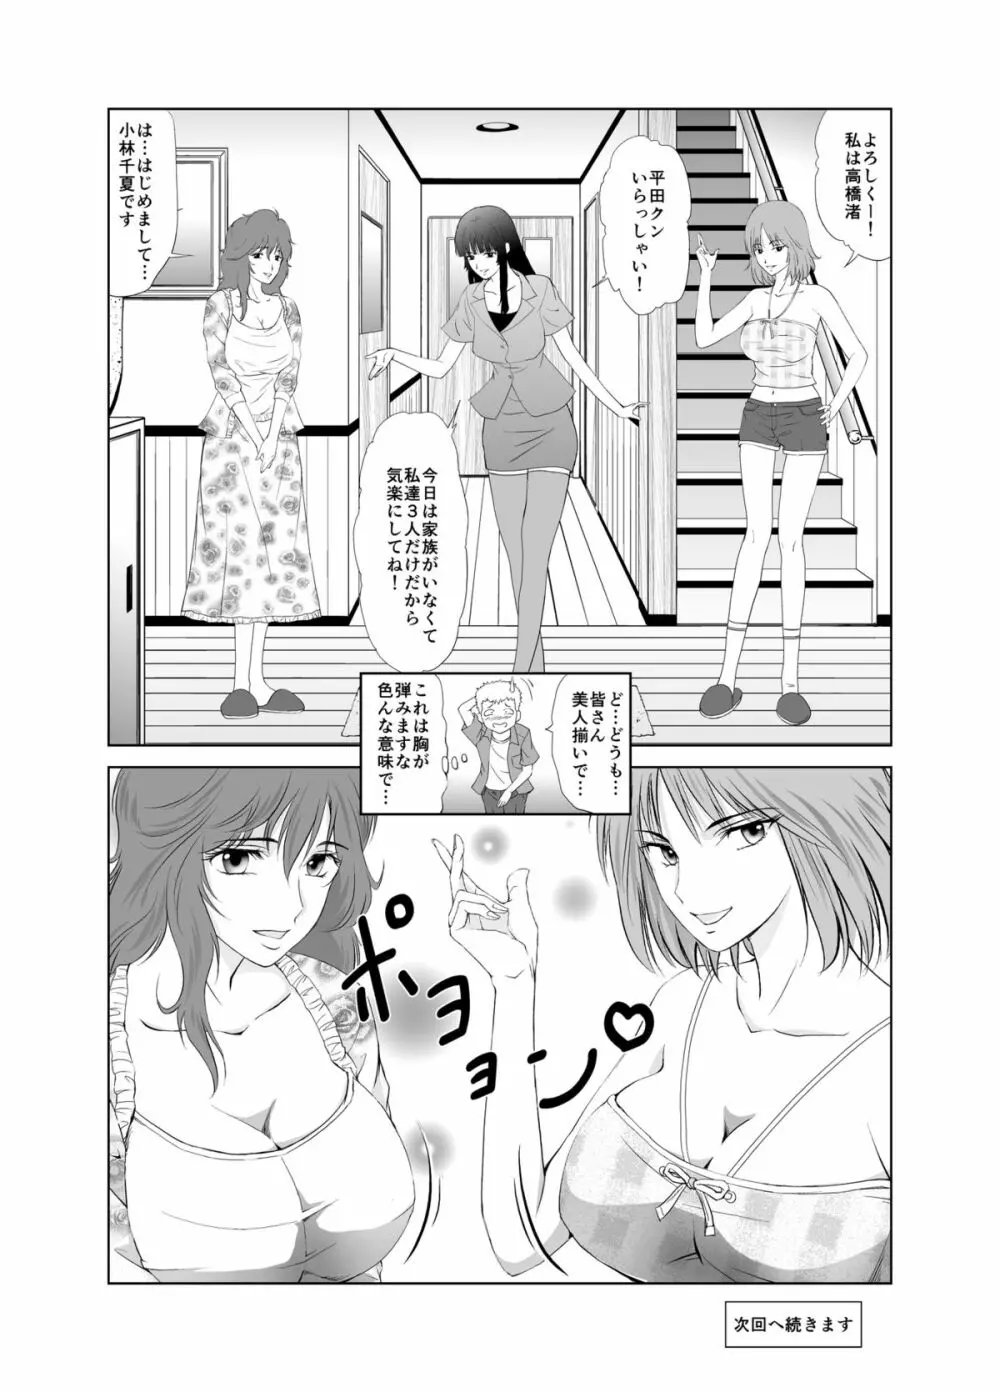 脱衣麻雀～漫画編～【完成版】 6ページ